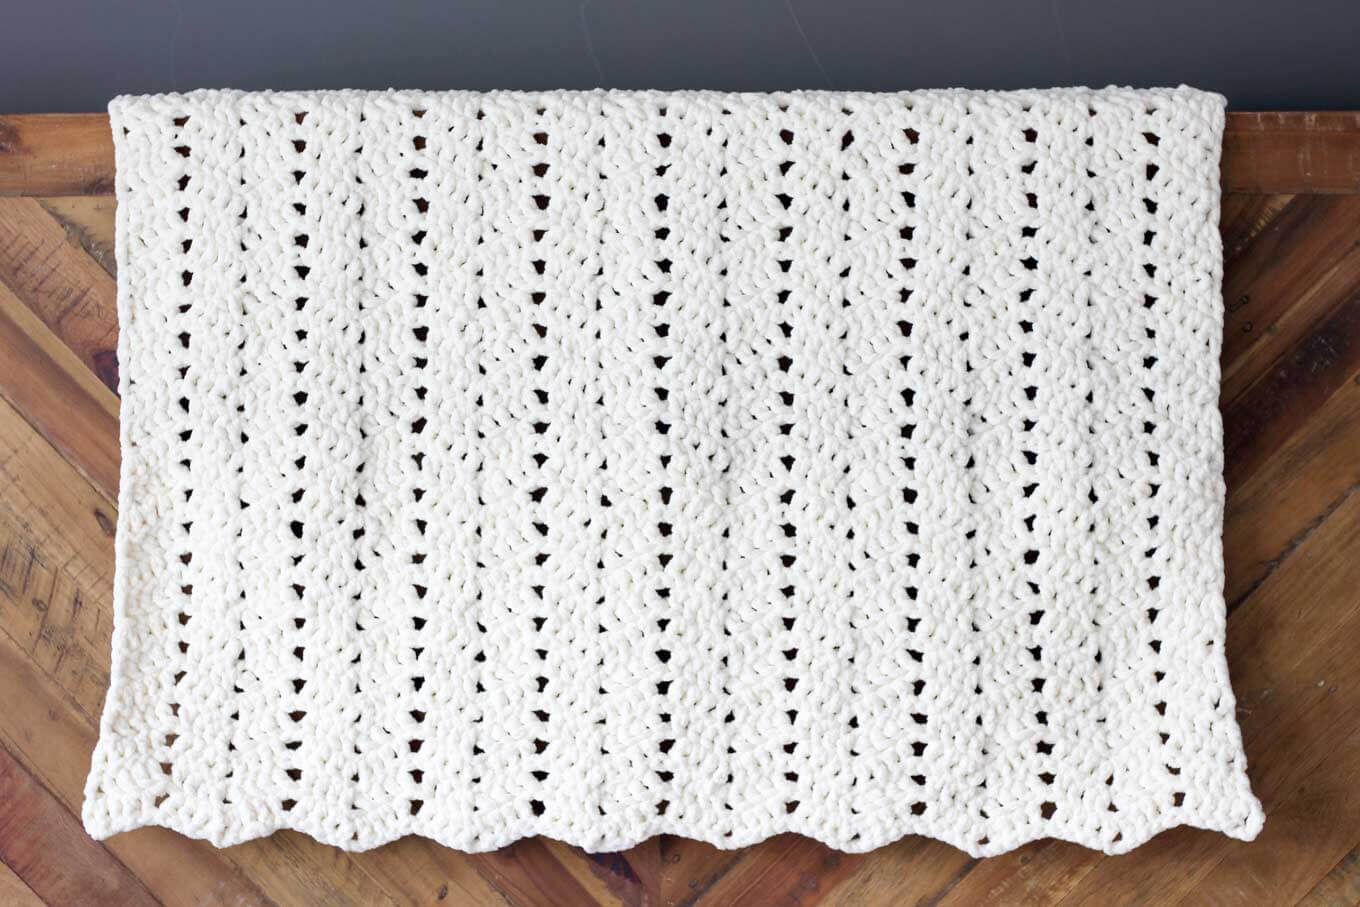 Bulky Yarn Crochet Patterns Free Free Modern Chunky Crochet Blanket Pattern Beginner Friendly